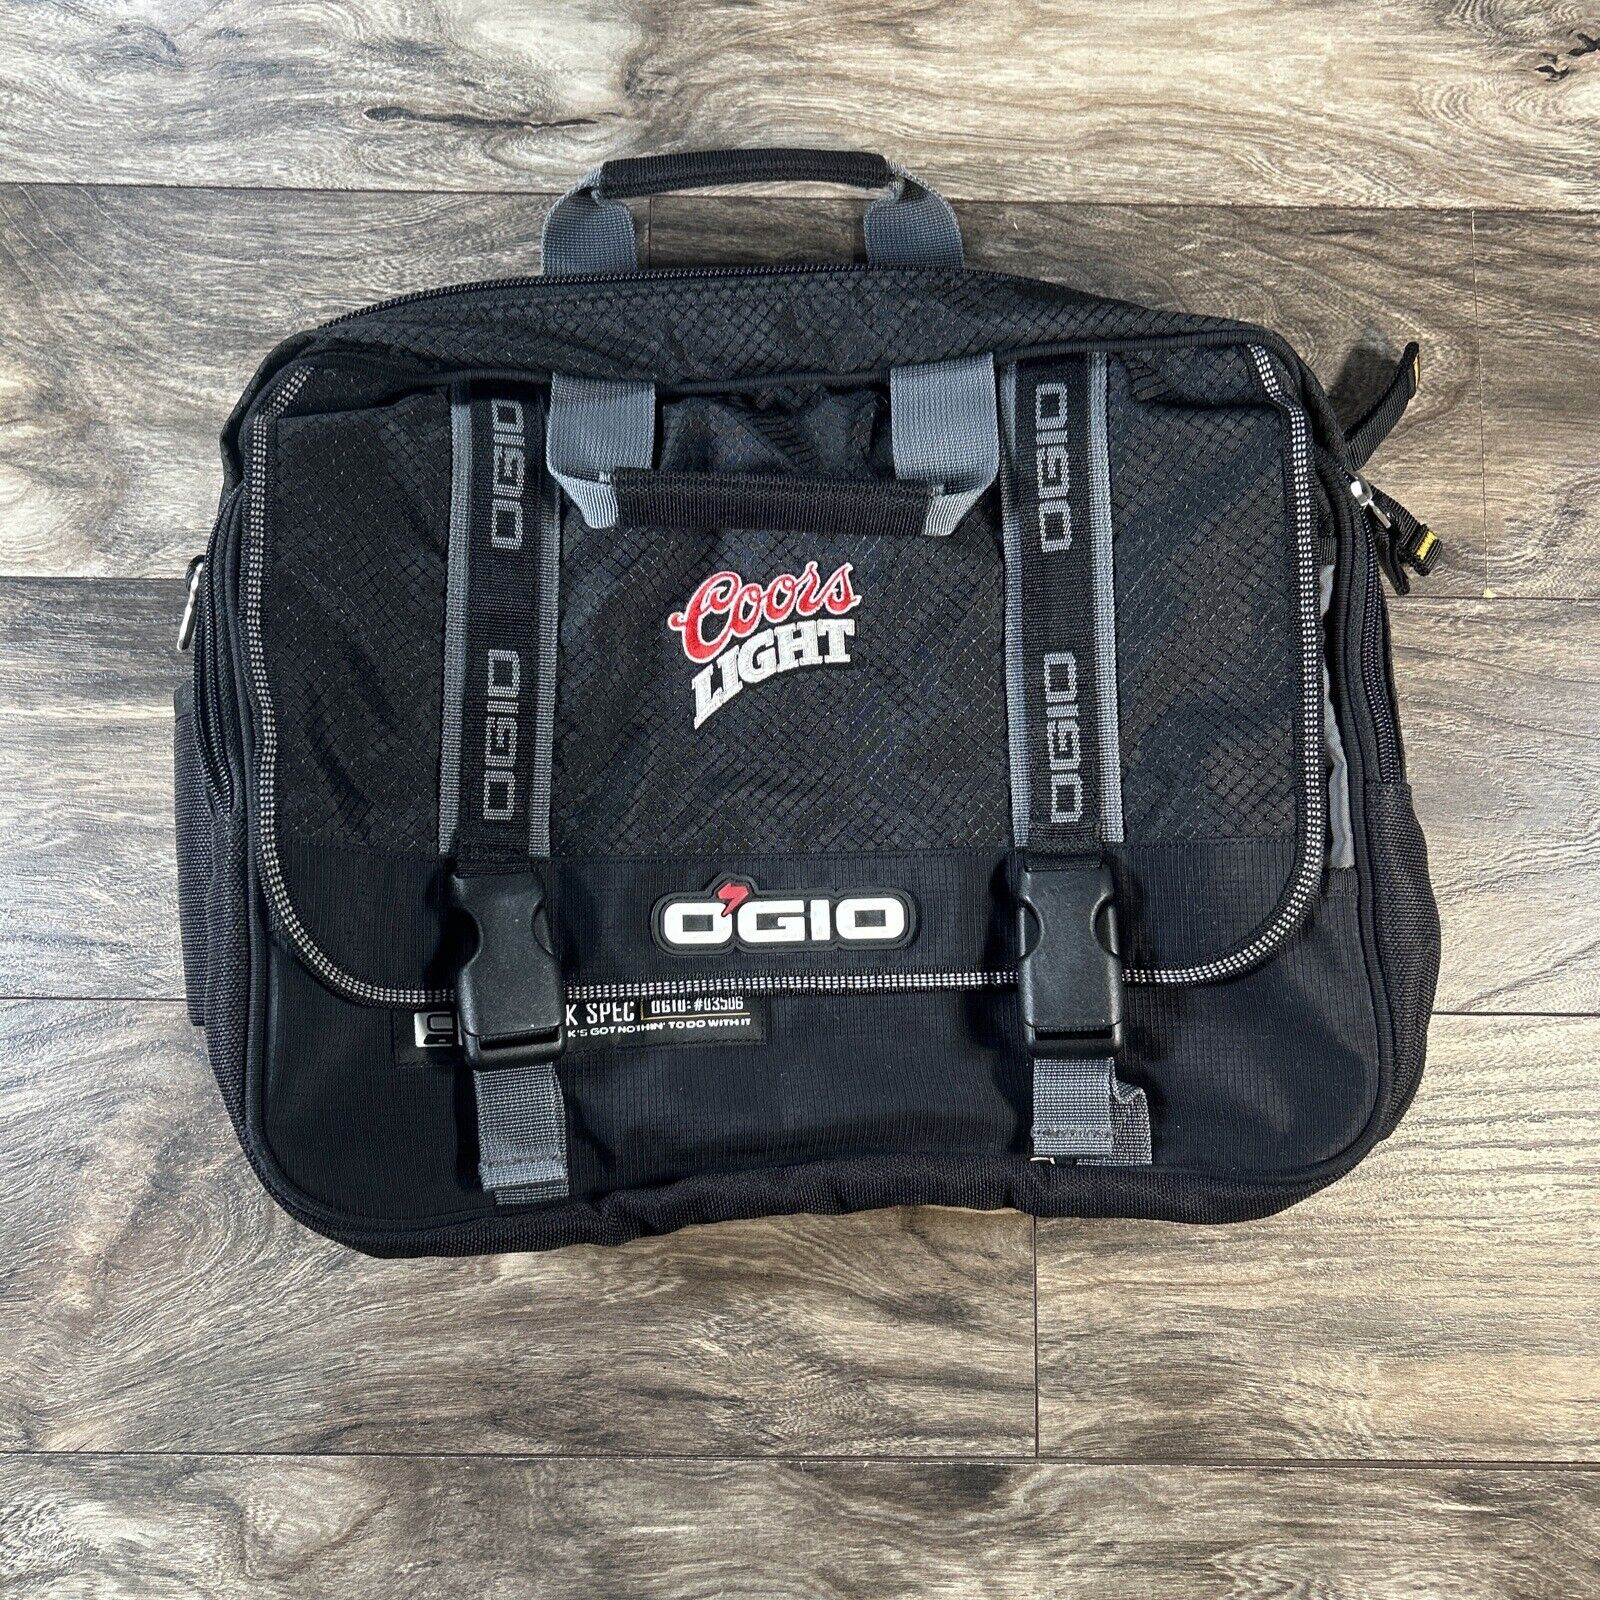 Coors Light Ogio Messenger Laptop Padded Bag Case Tek Spec No Shoulder Strap